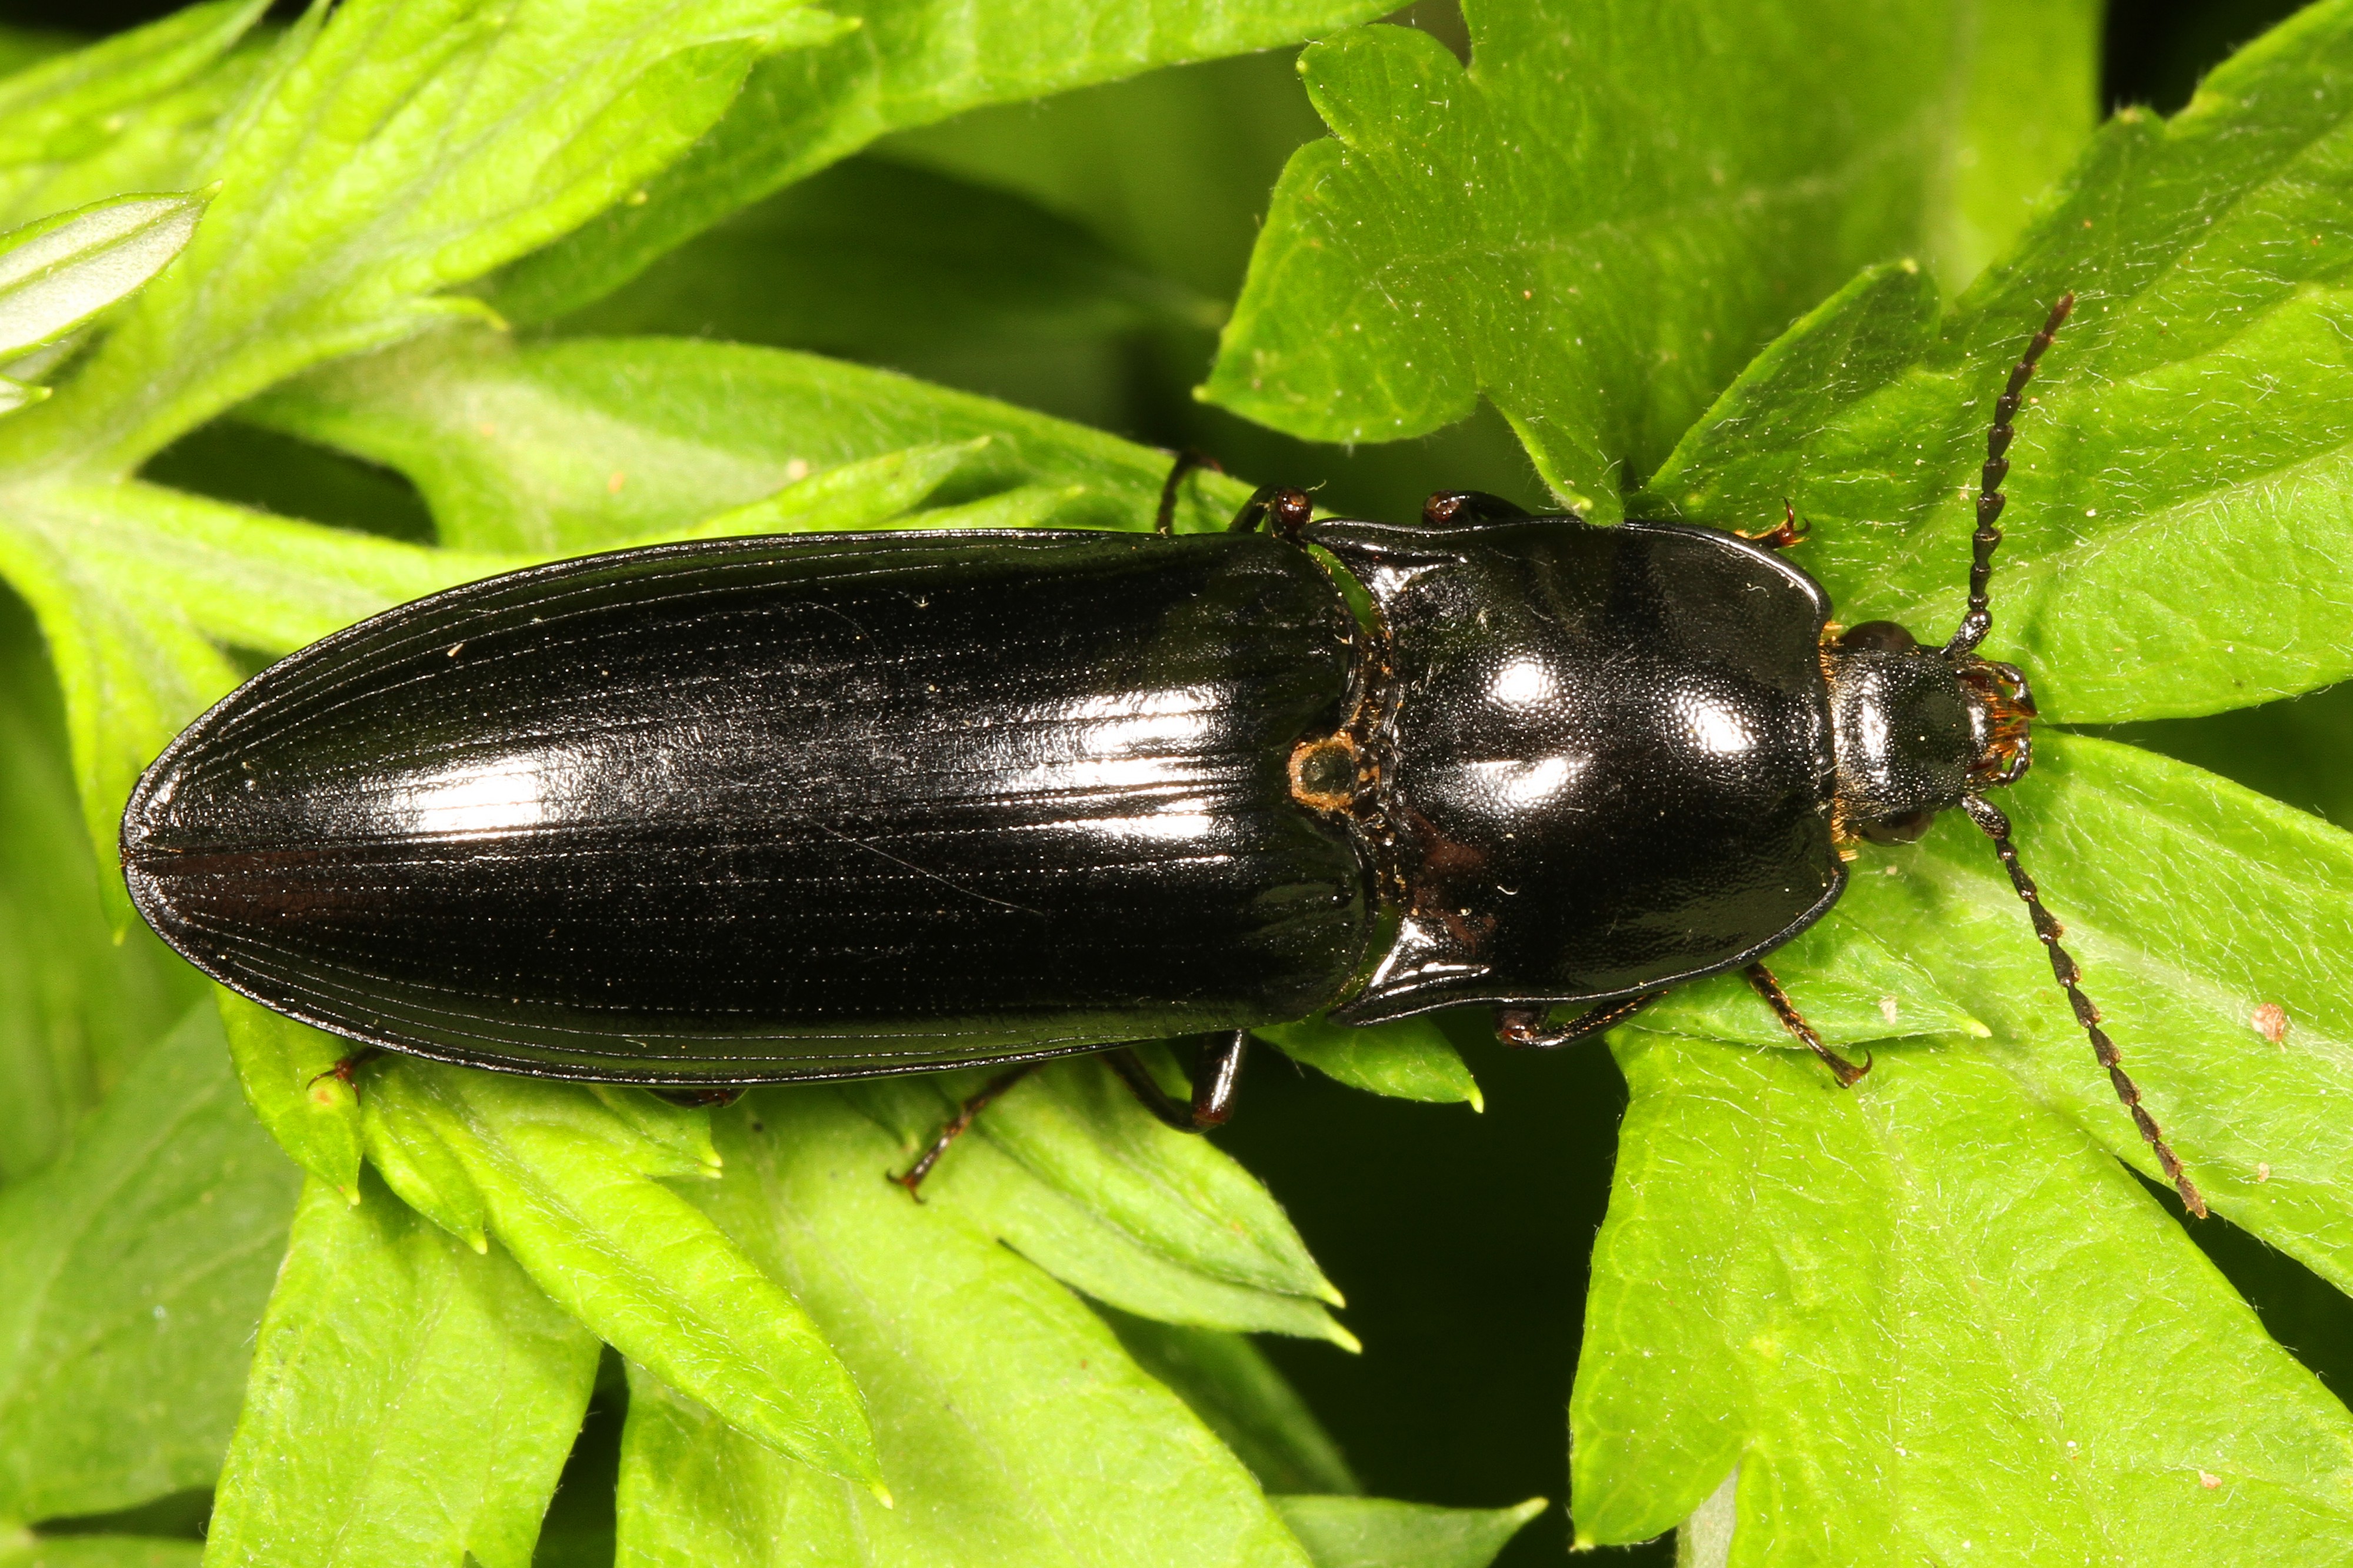 Click Beetle - Melanactes species, Meadowwood Farm SRMA, Mason Neck, Virginia